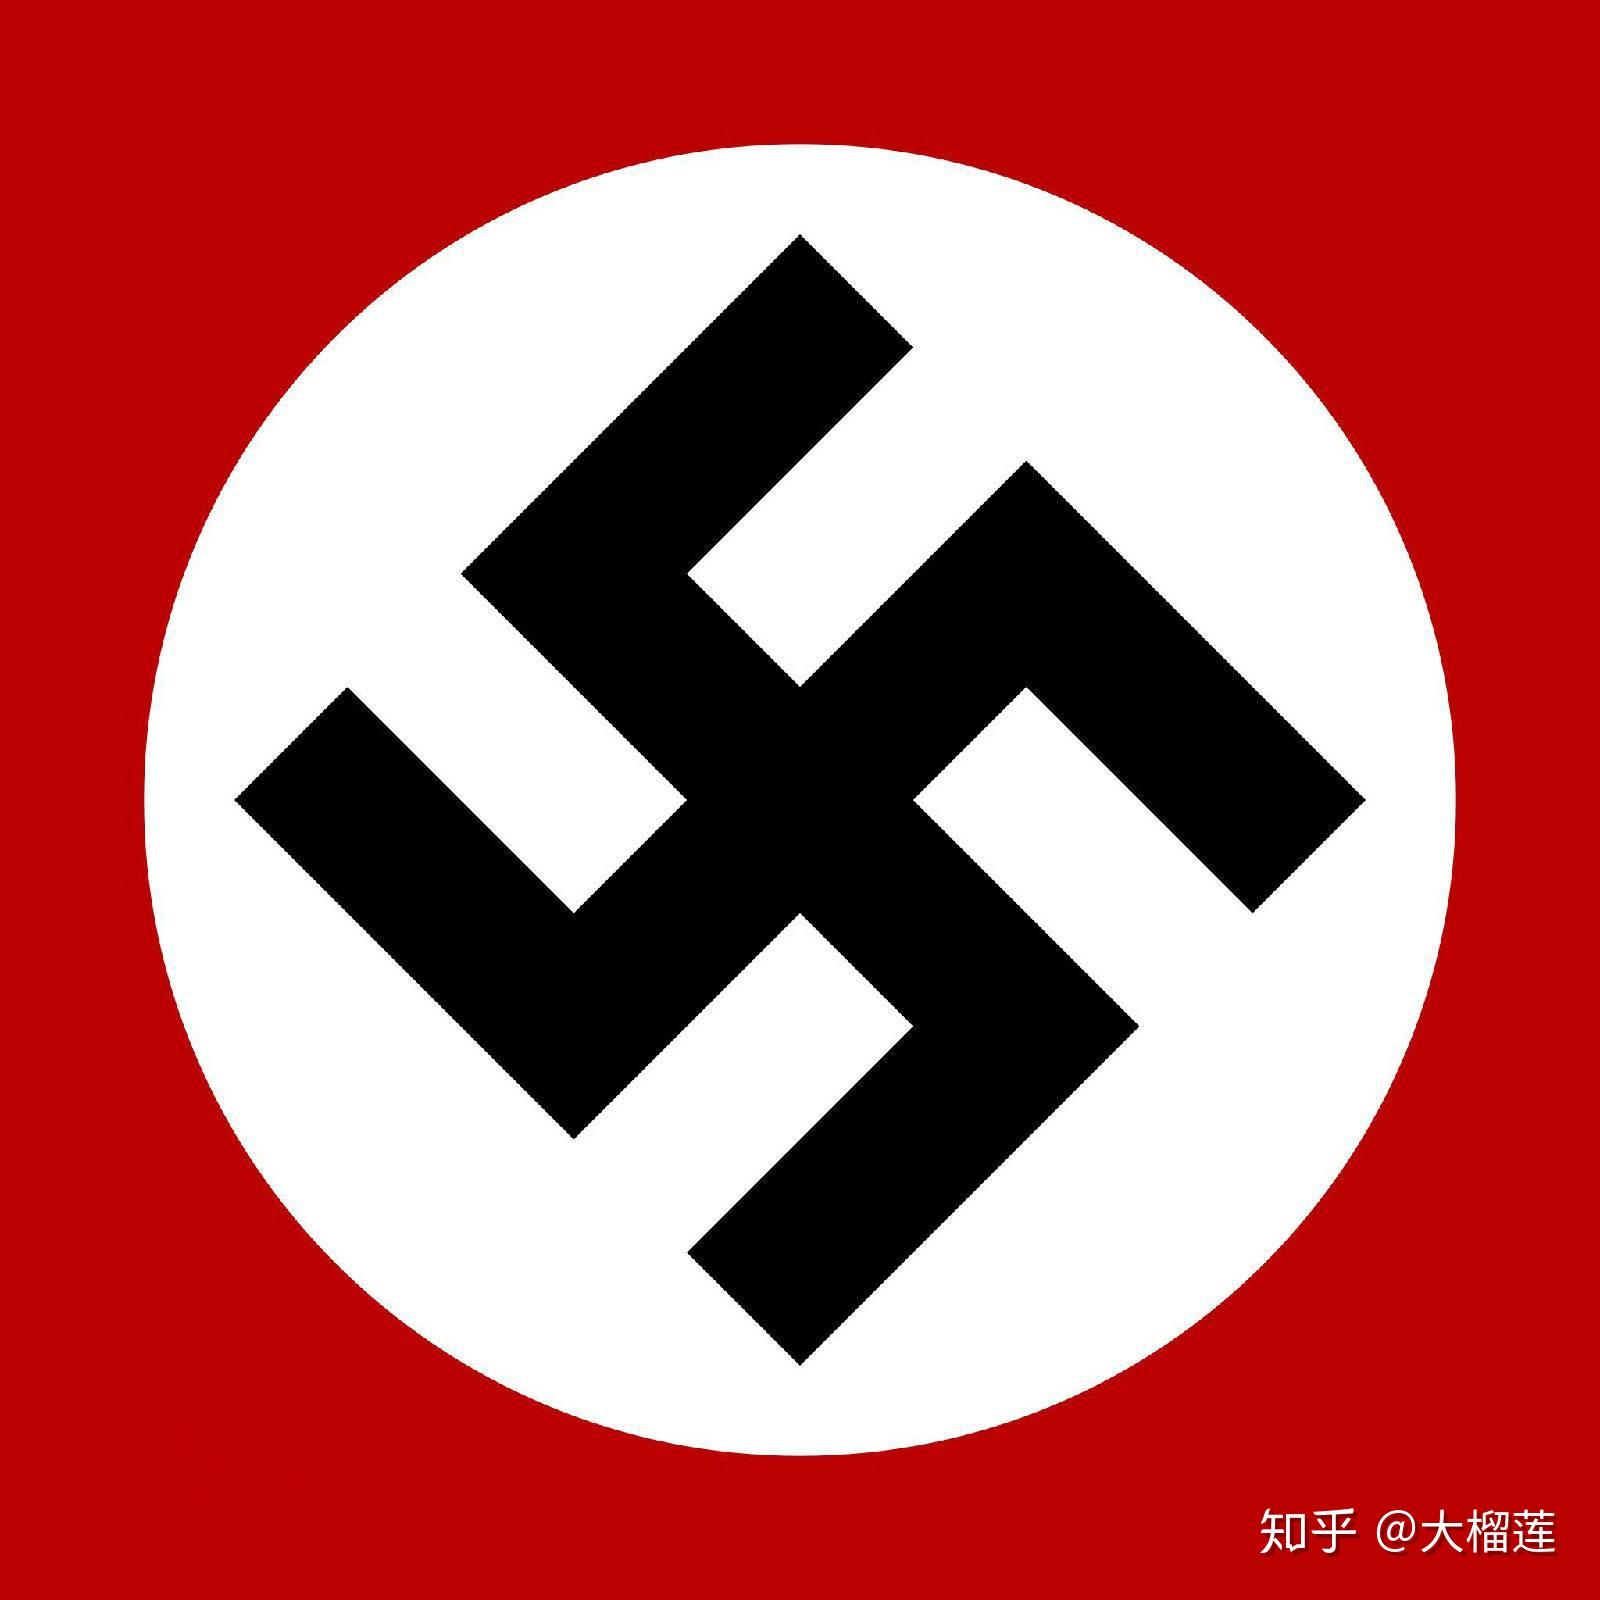 还有二战德军陆军军旗,基本也保持与元首logo一致的红白黑配色